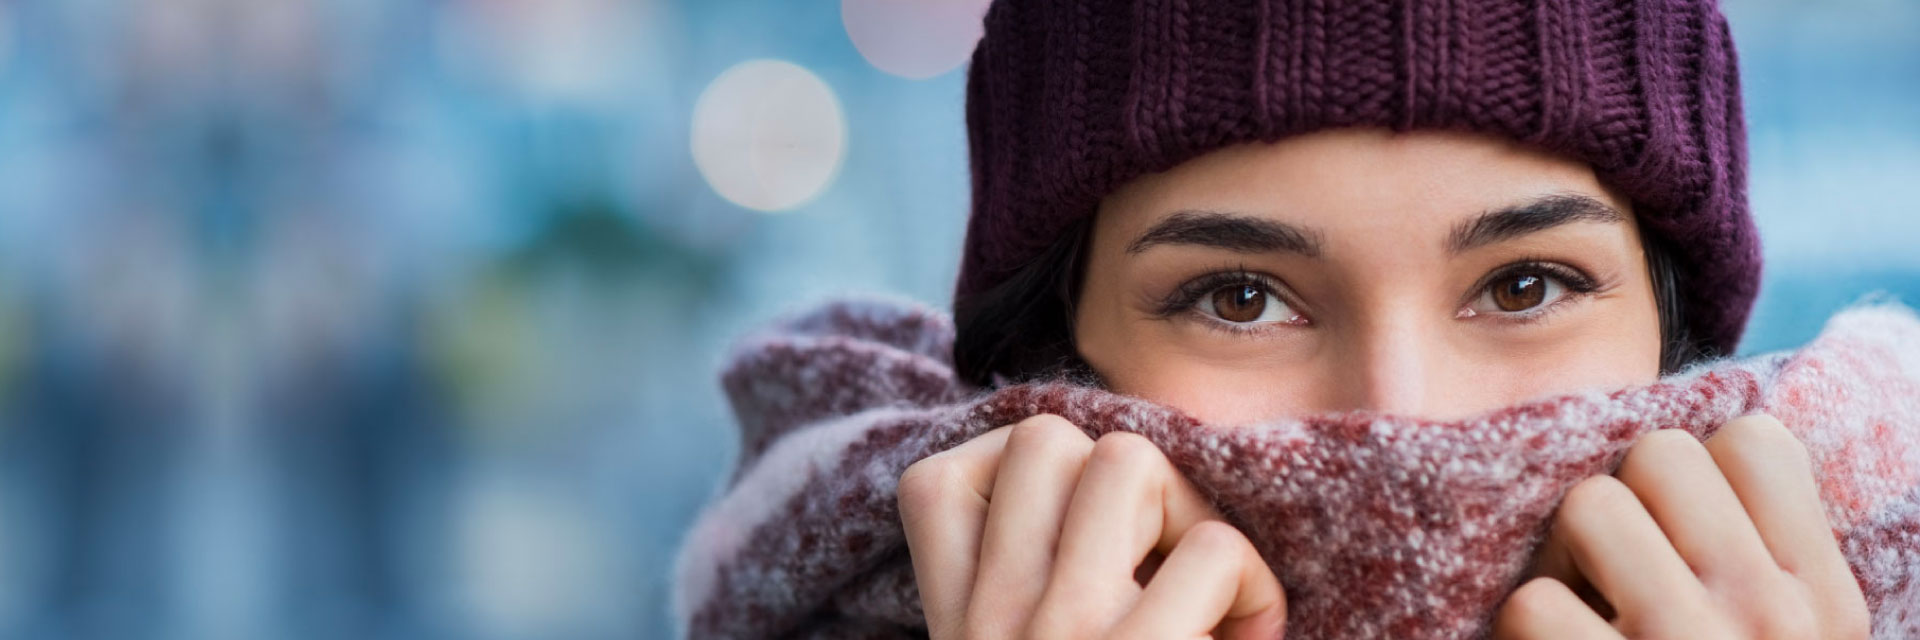 Doenças comuns do inverno e como evitá-las